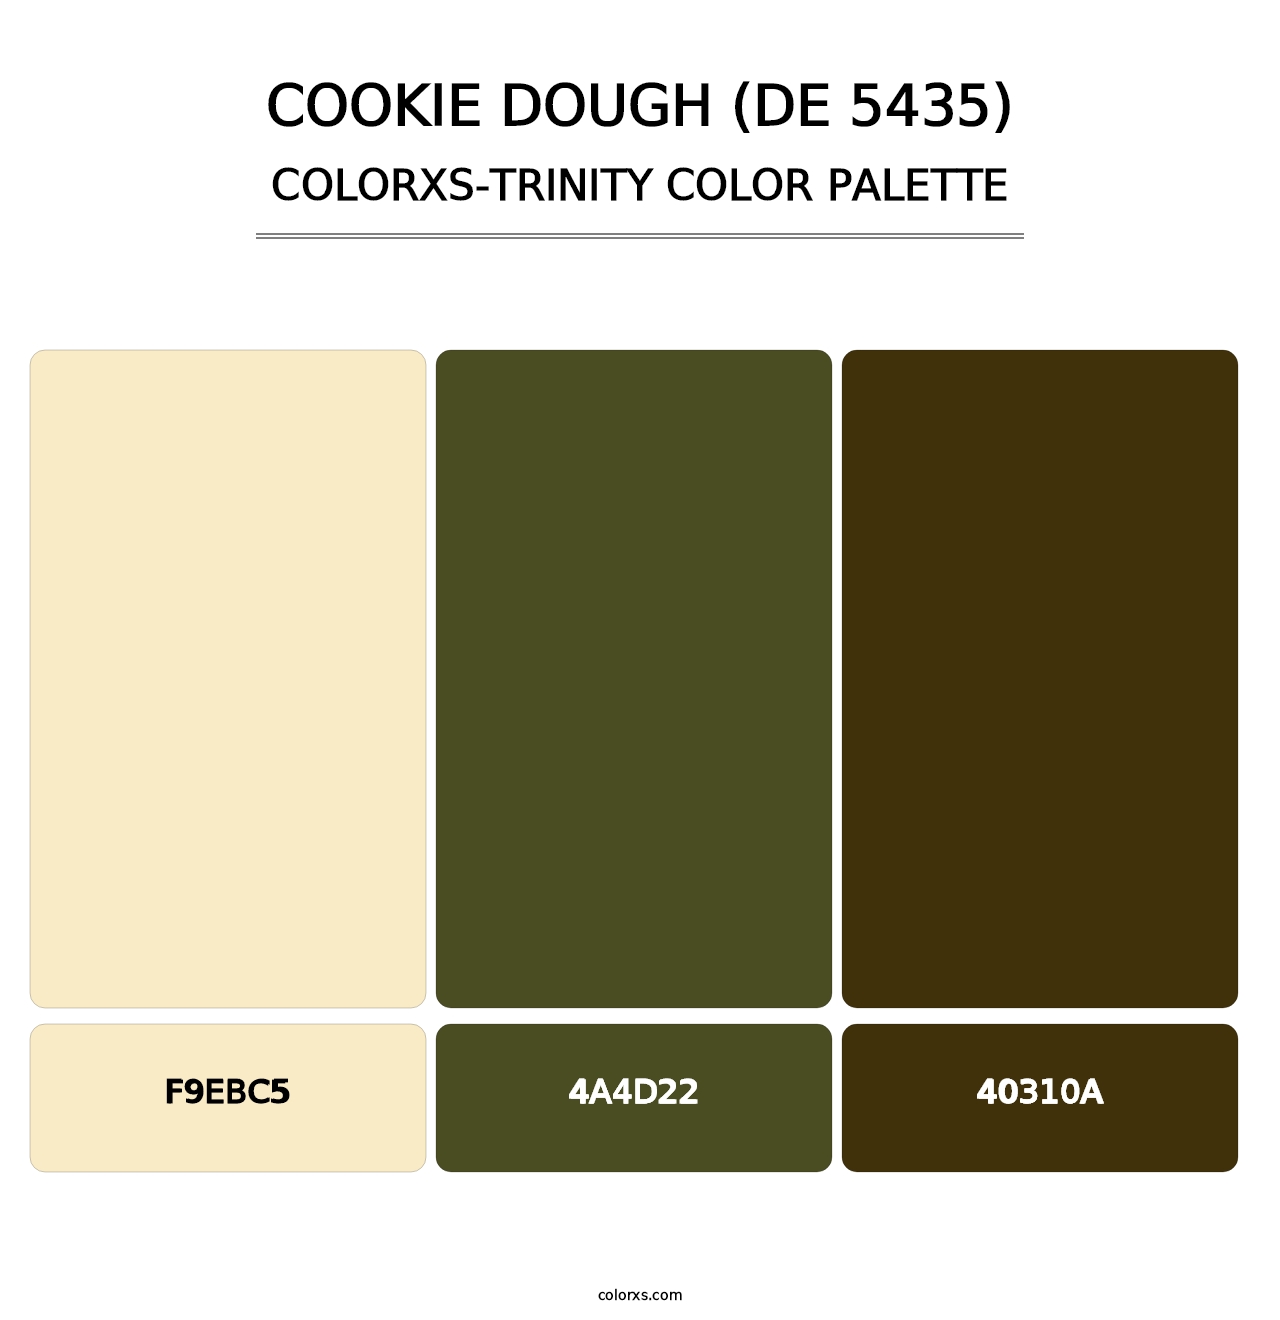 Cookie Dough (DE 5435) - Colorxs Trinity Palette